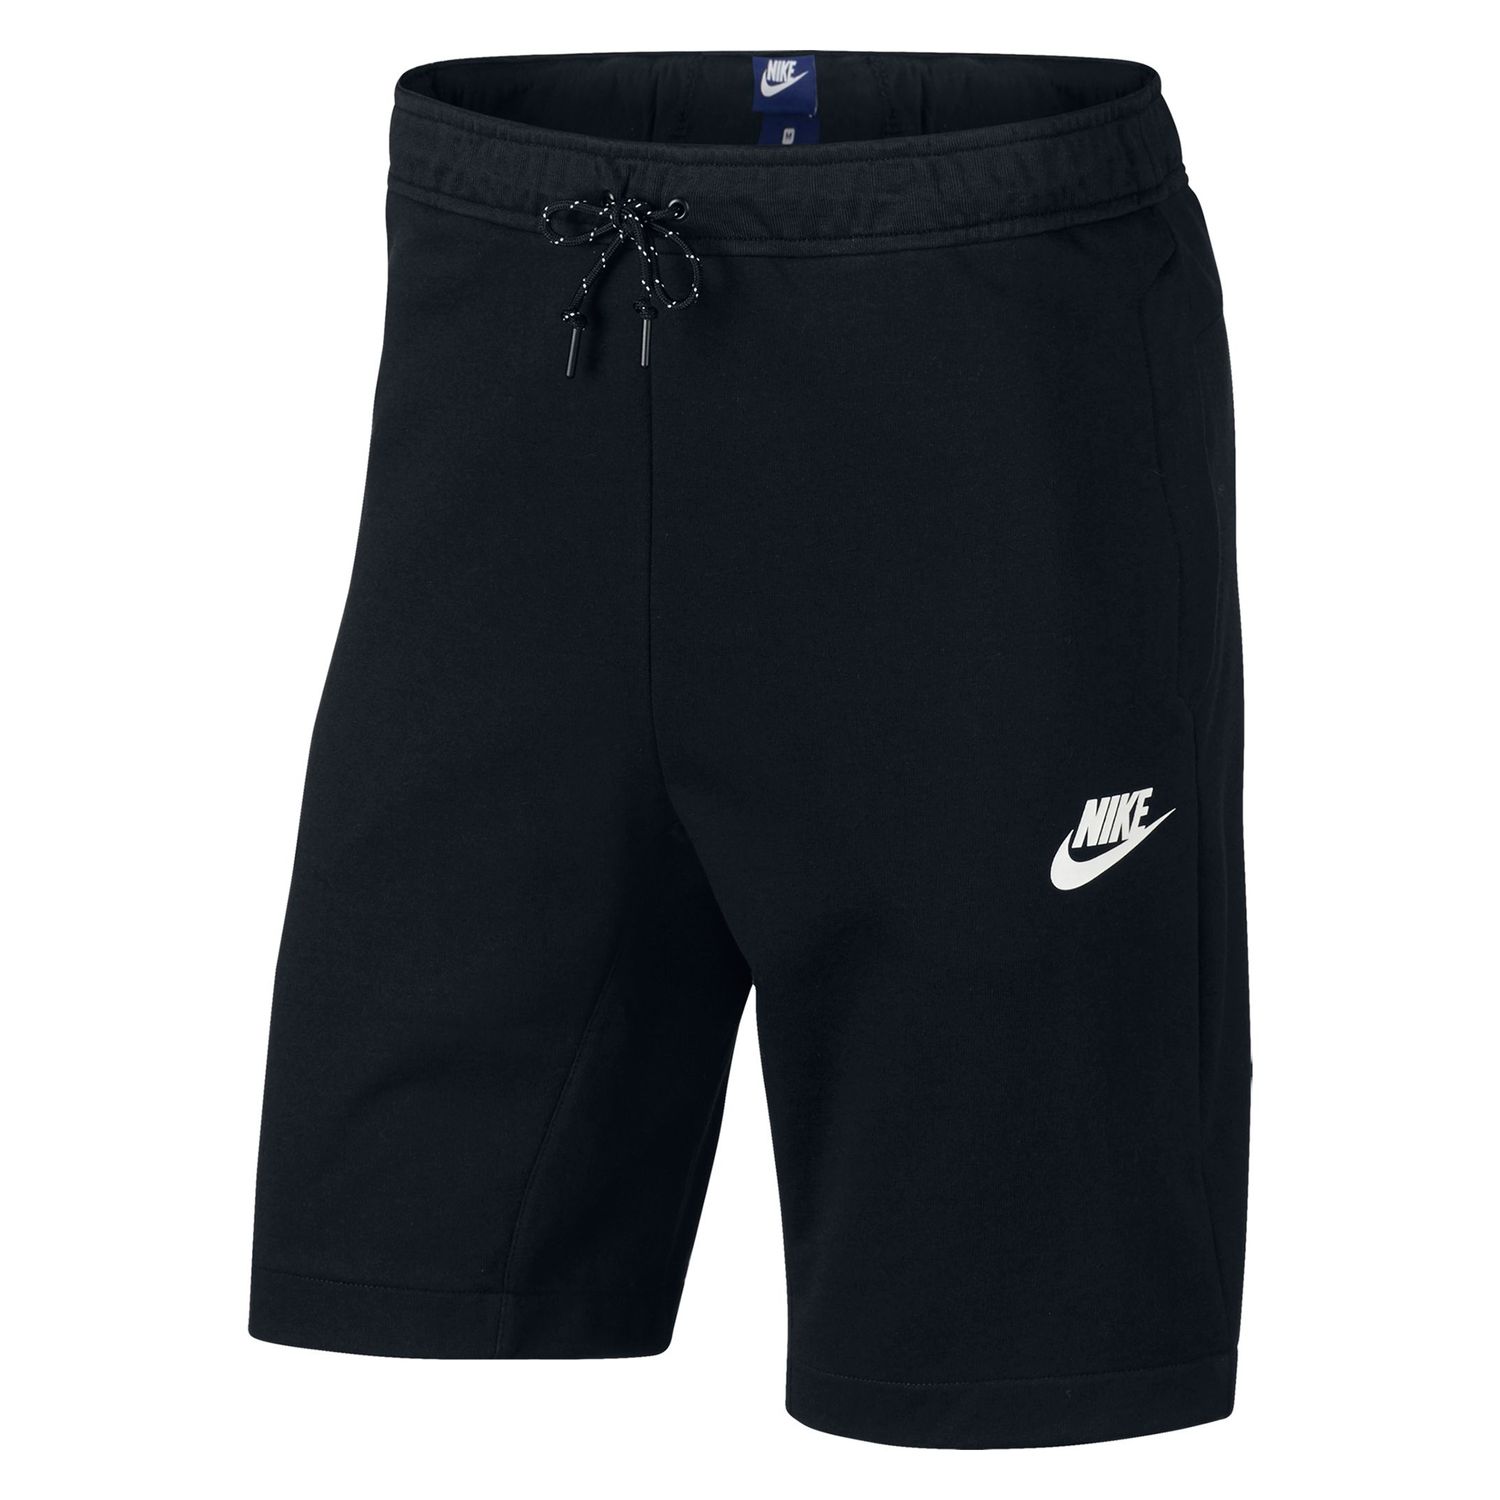 Men's Nike Advance 15 Shorts